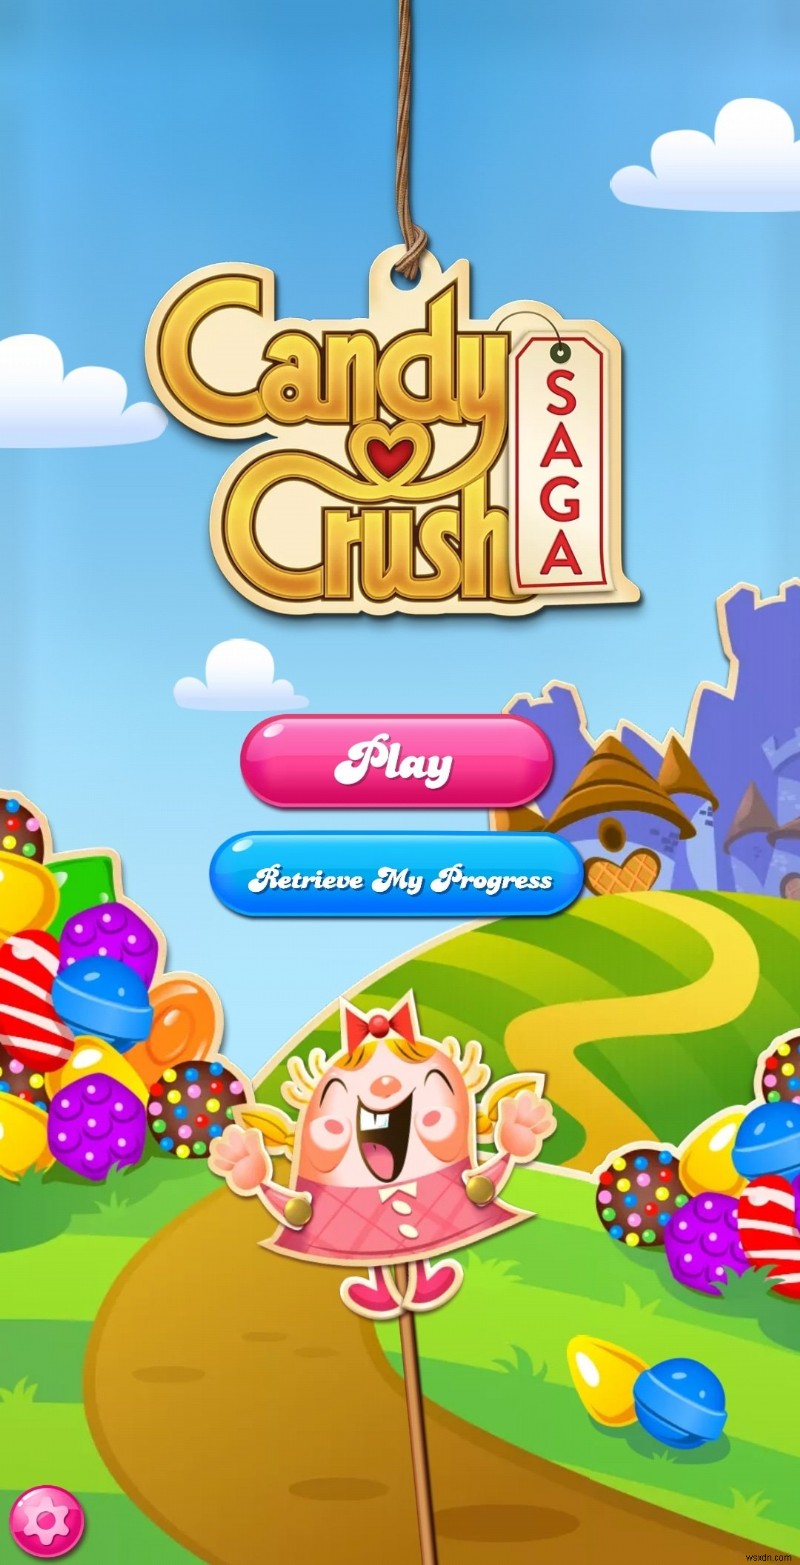 Cách hack Candy Crush Saga trên Android mà không cần root